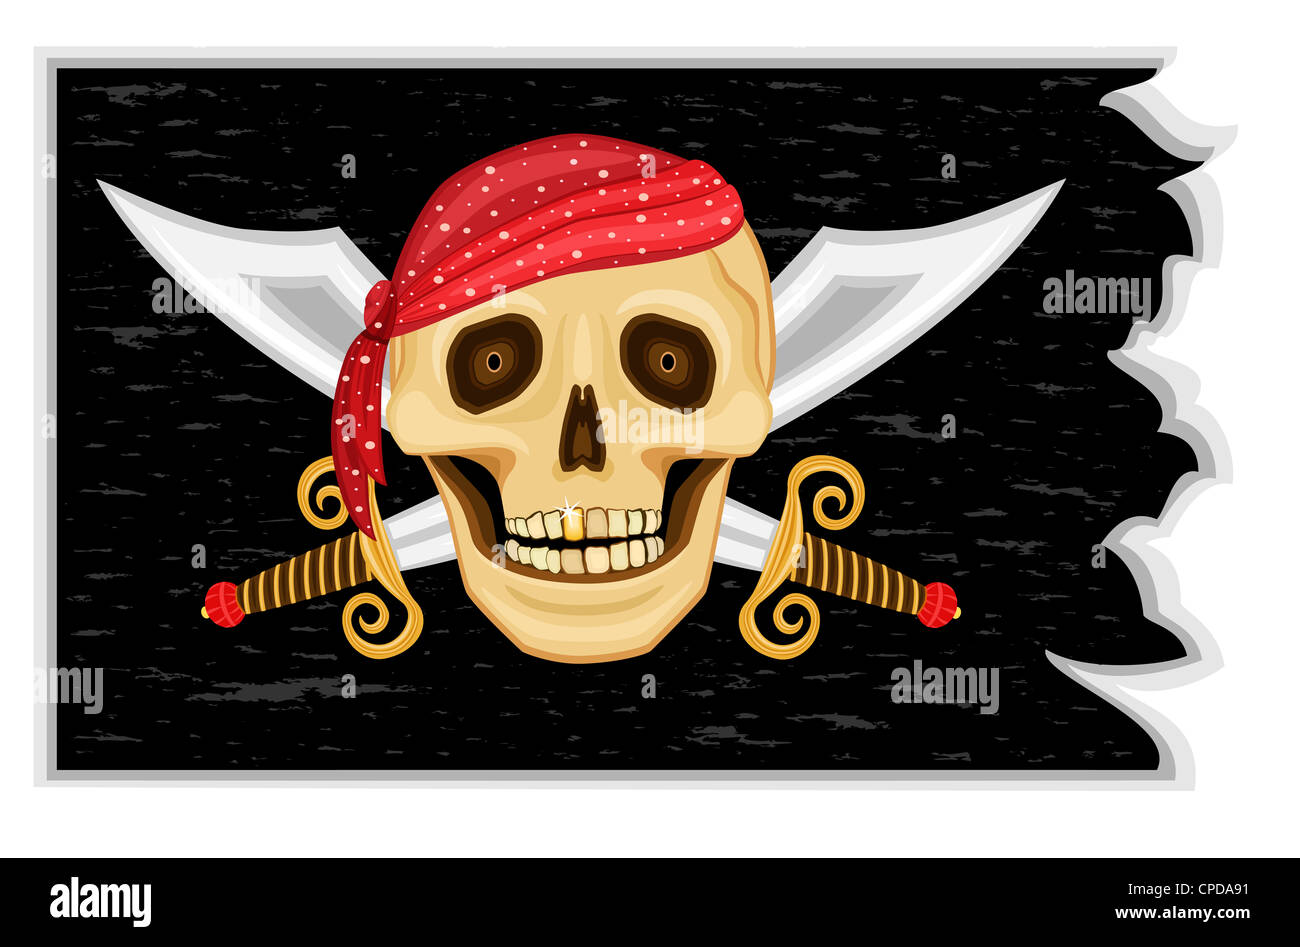 Il Jolly Roger - Pirate bandiera nera con teschio umano, dente d oro e spade incrociate Foto Stock